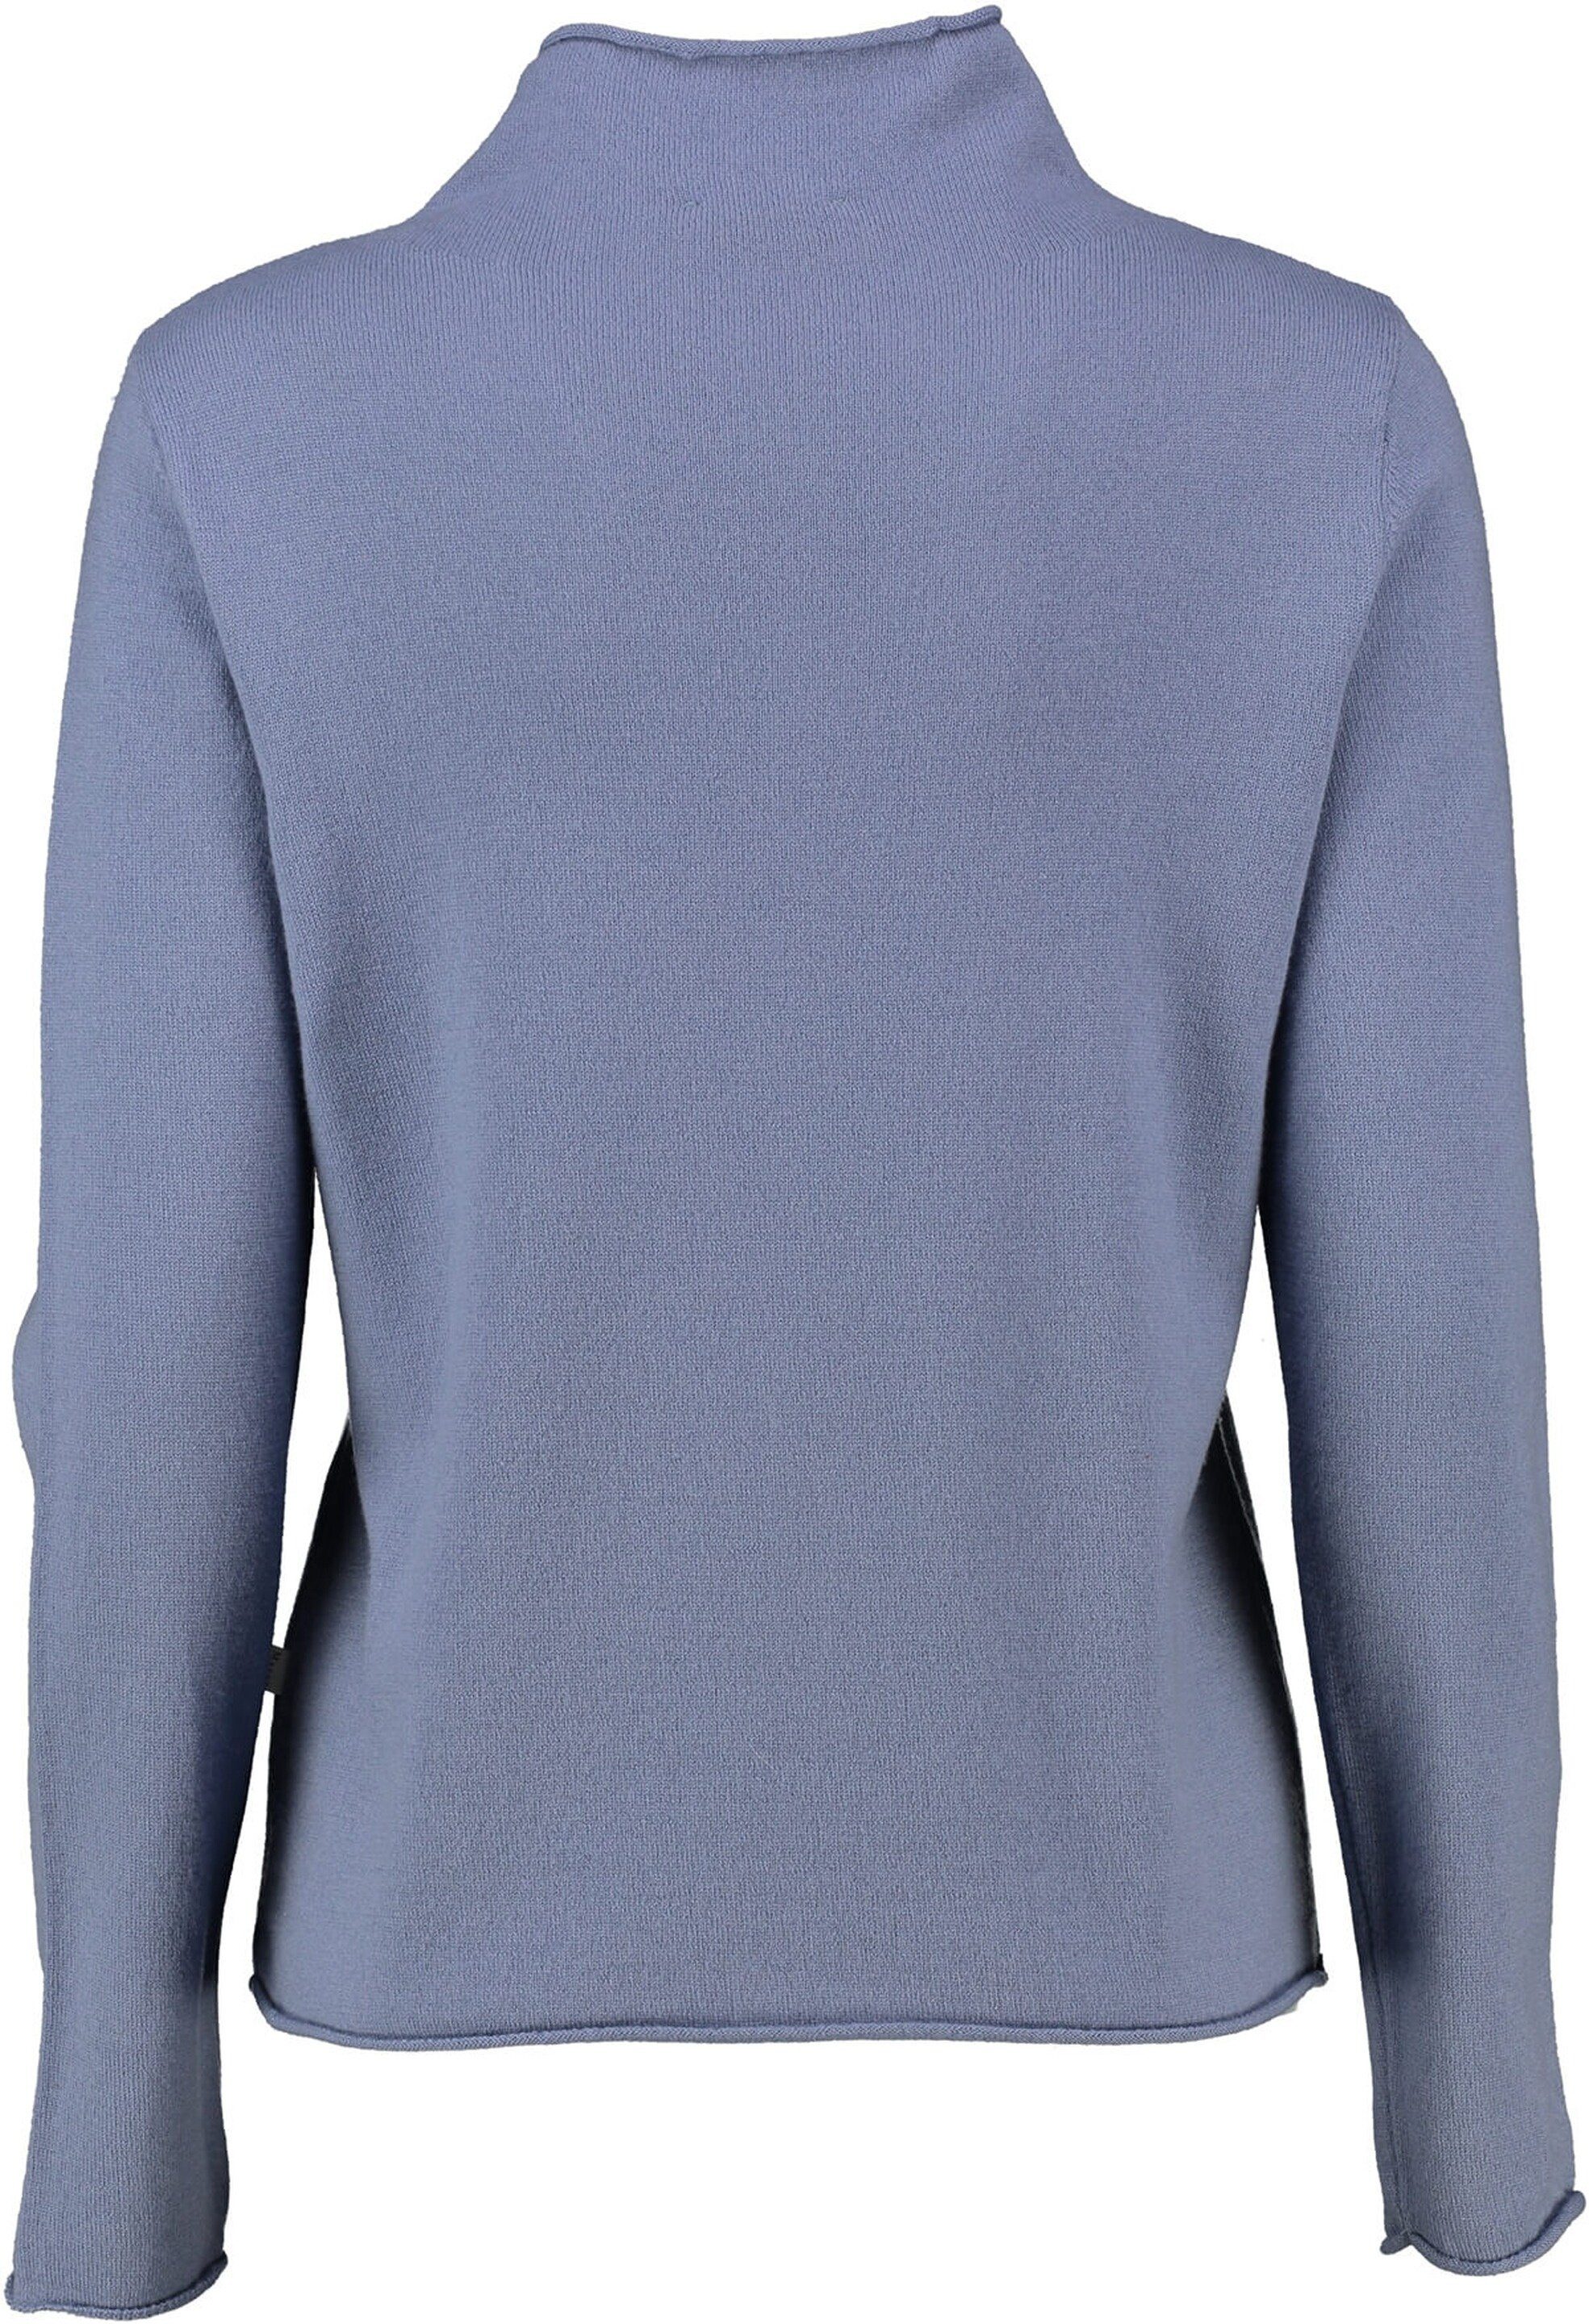 MAERZ hochwertiger Stehkragenpullover Stehkragen-Pullover blau aus Merinowolle MAERZ Muenchen